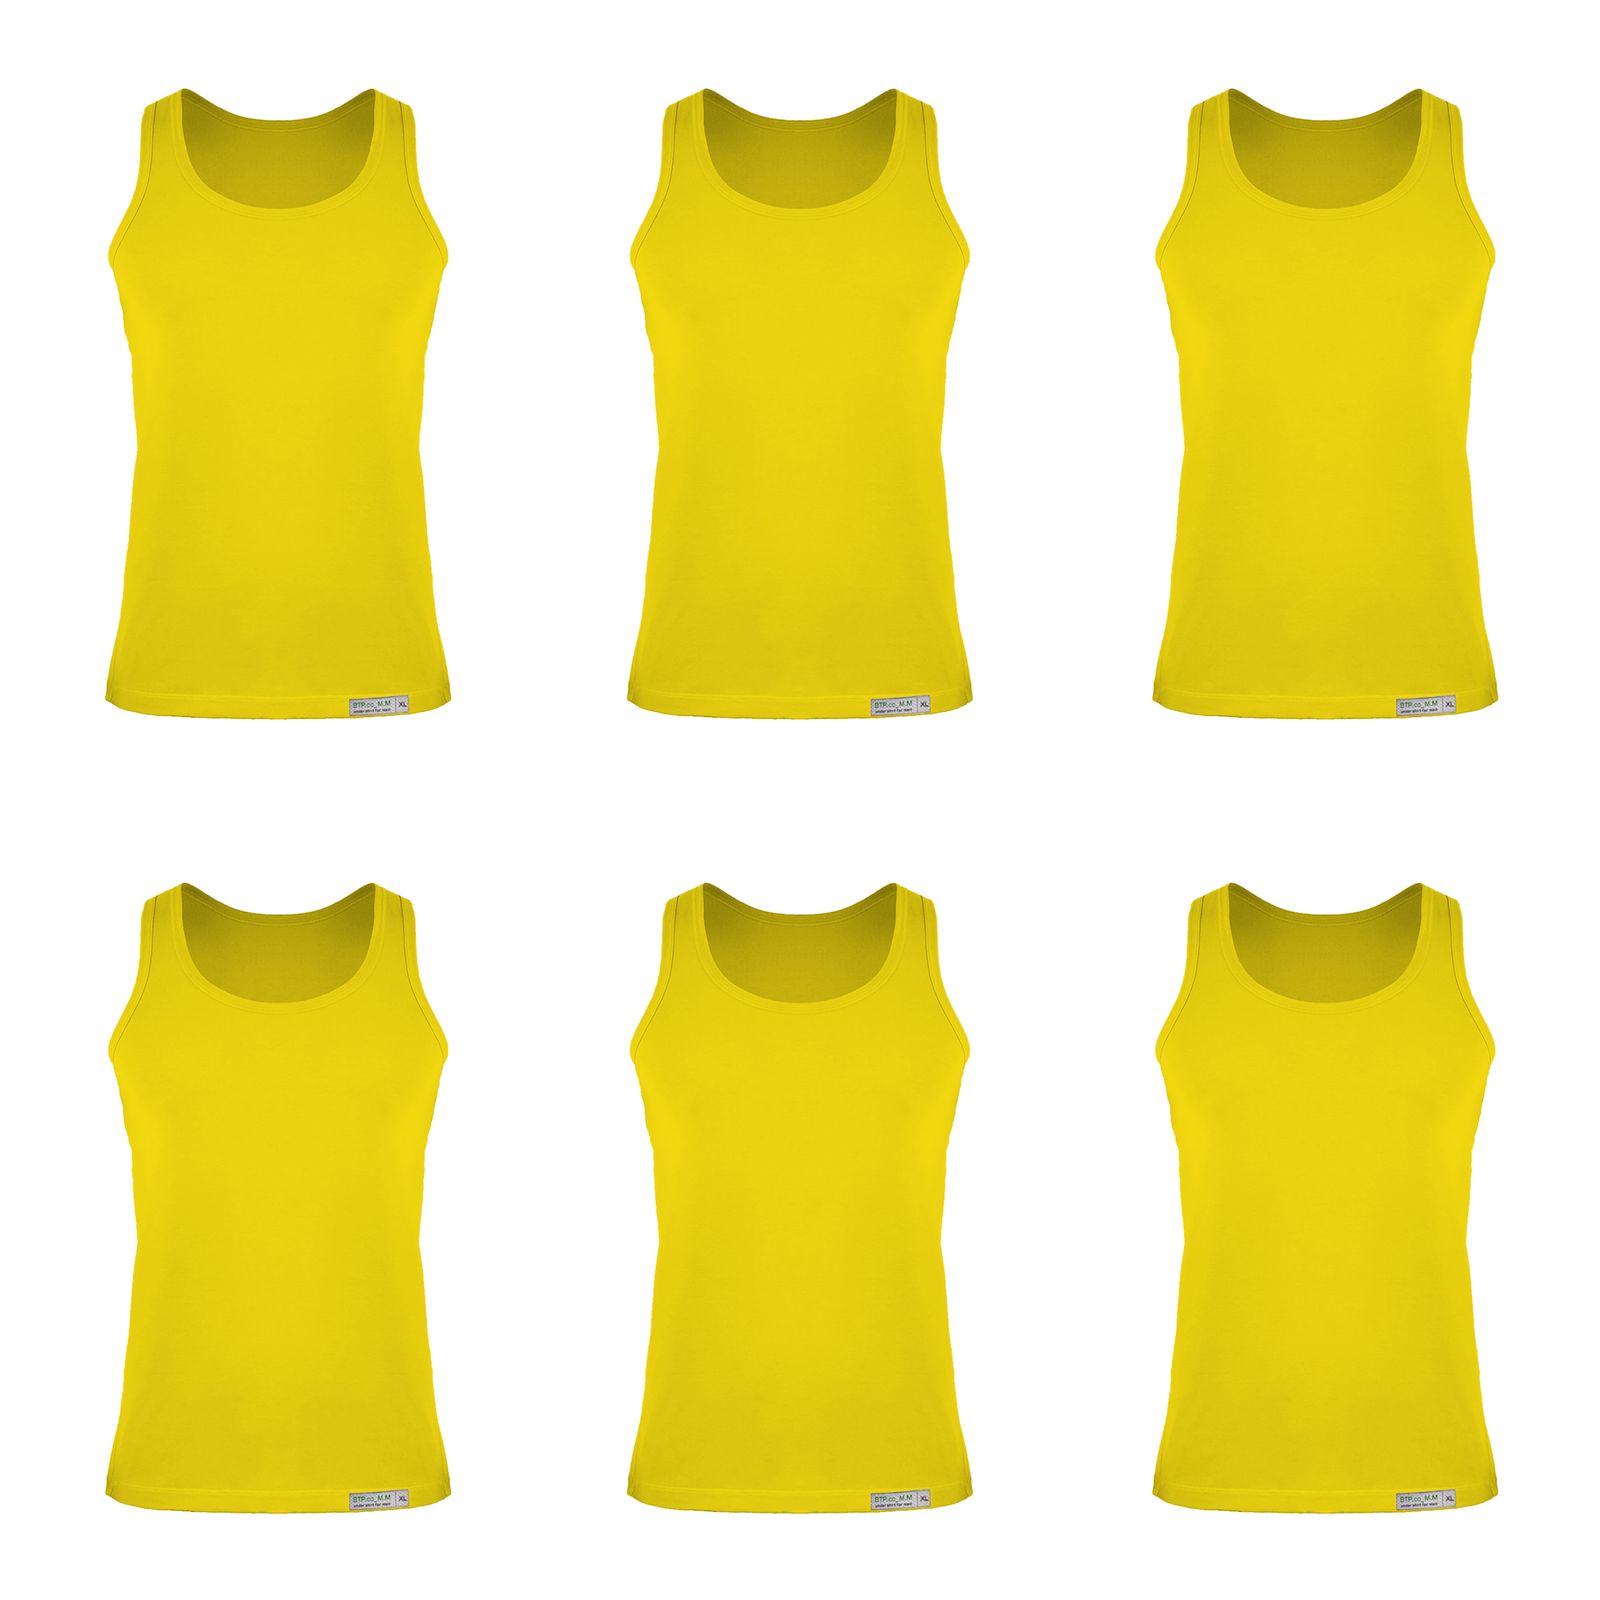 زیرپوش رکابی مردانه برهان تن پوش مدل 5-01 بسته 6 عددی رنگ زرد